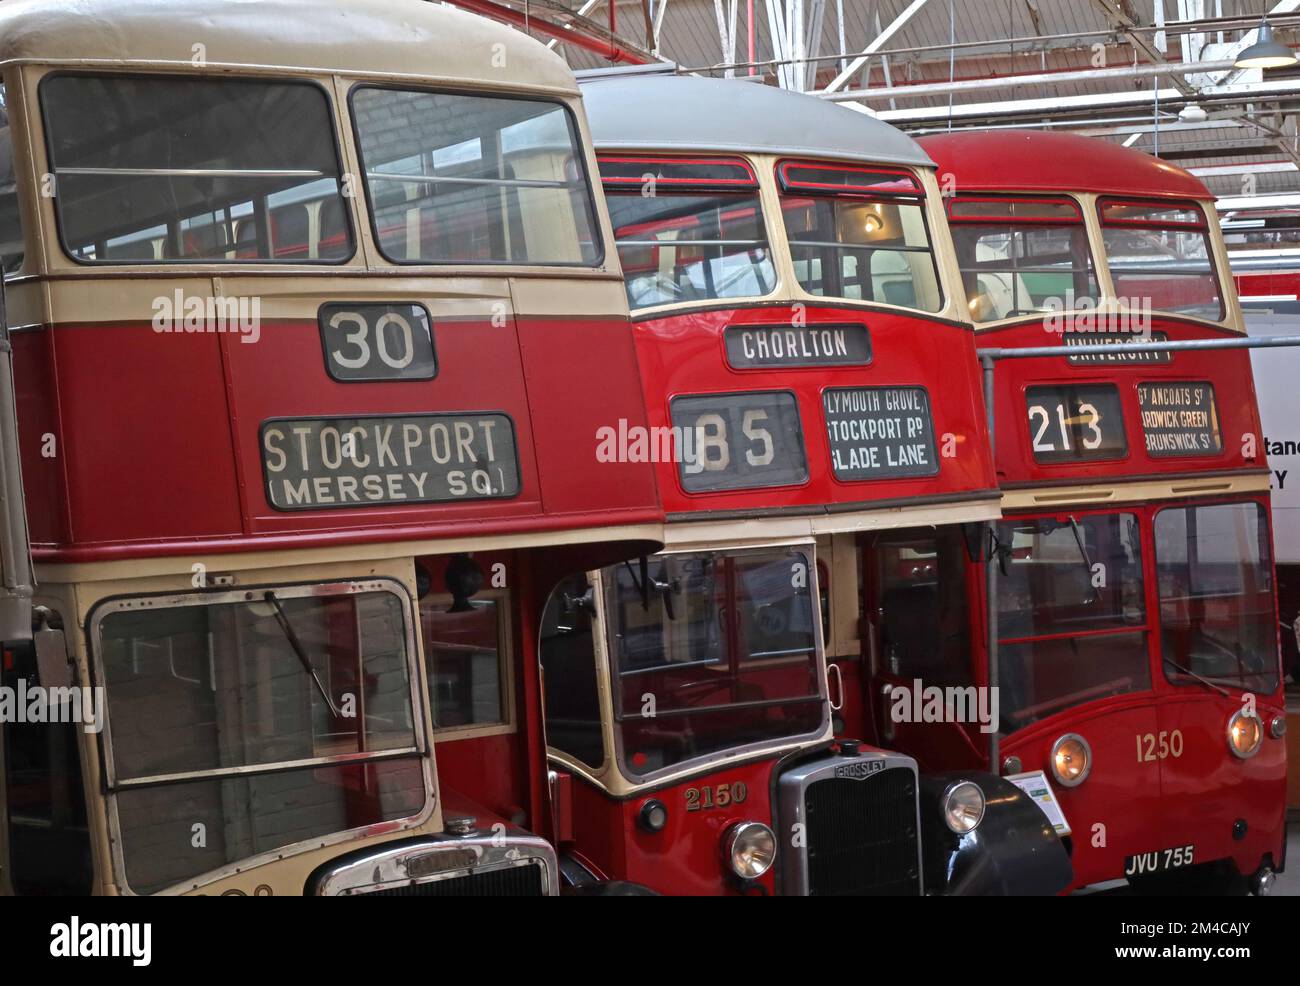 Tre autobus rossi Manchester, 30 Stockport Mersey Square, Chorlton 85, 213 per l'Università, Queens Road Depot, Cheetham Hil, Manchester, Inghilterra, REGNO UNITO, M8 8EP Foto Stock